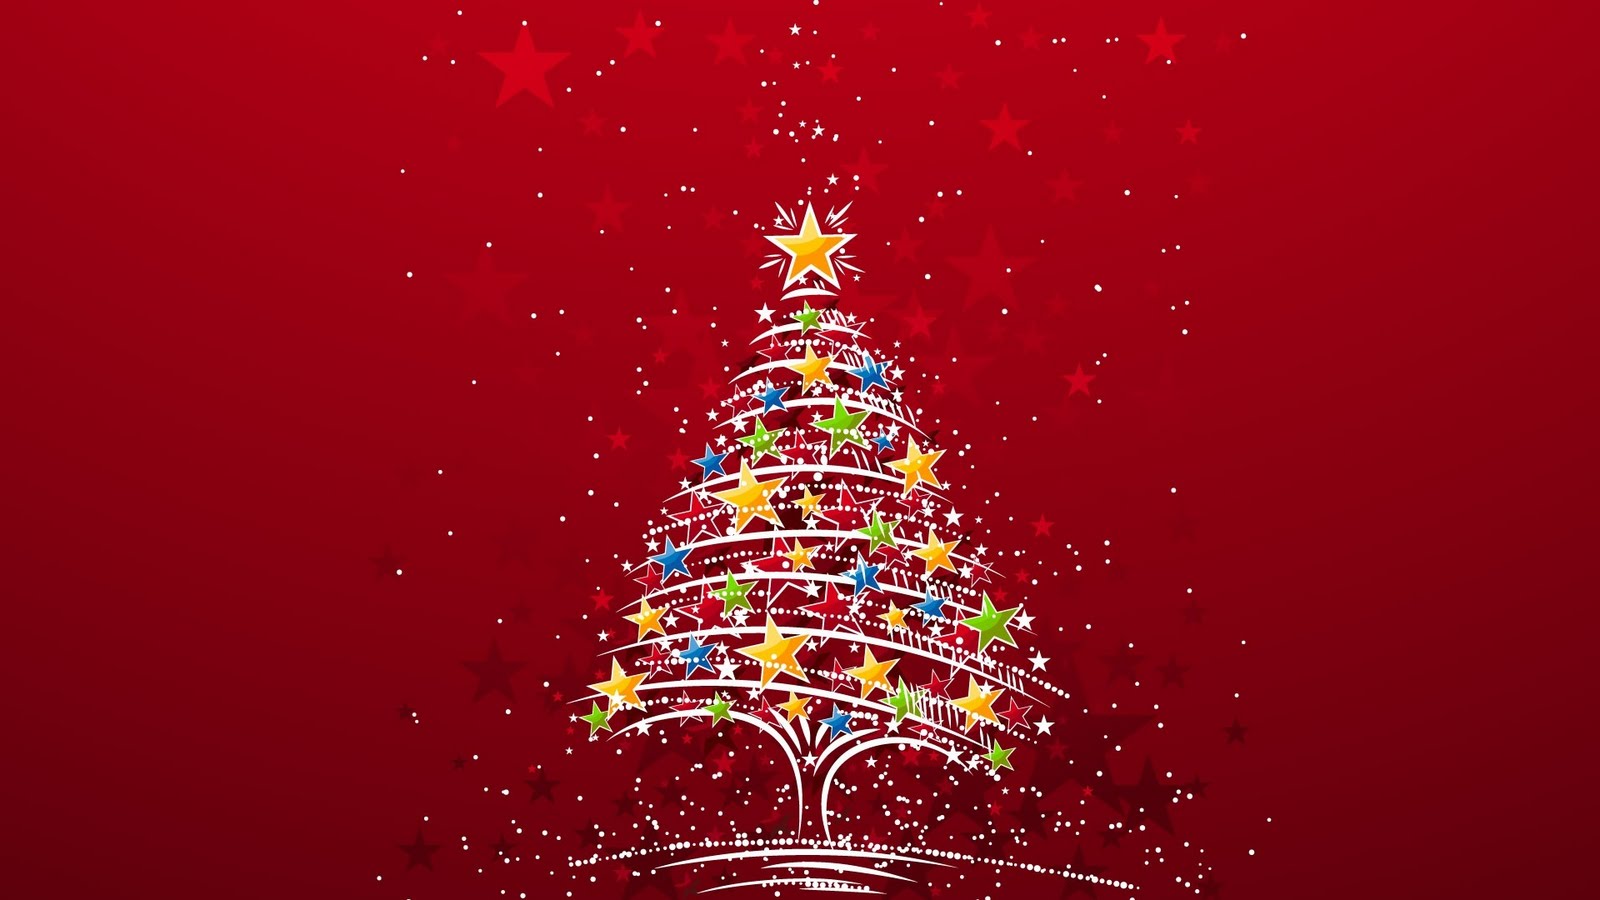 http://1.bp.blogspot.com/-ekEov9mxn-U/TuaJTnYuesI/AAAAAAAAAP4/VtCtdEcVxYk/s1600/colorful_christmas_tree-1920x1200.jpg